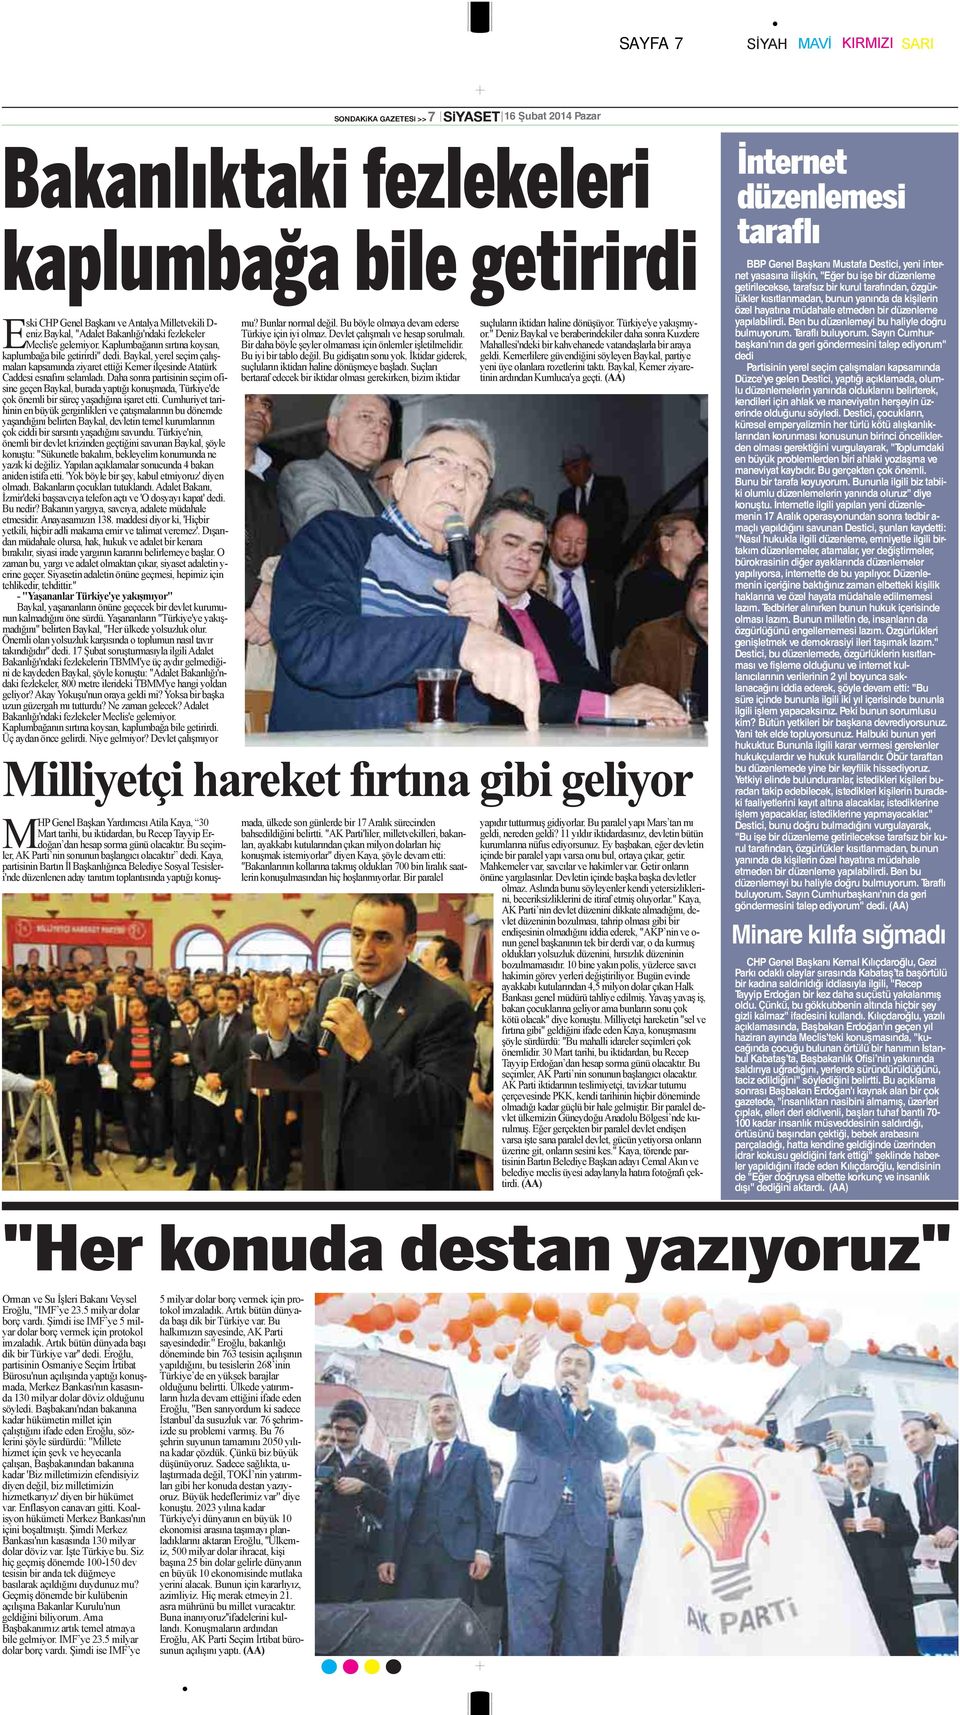 Baykal, yerel seçim çalışmaları kapsamında ziyaret ettiği Kemer ilçesinde Atatürk Caddesi esnafını selamladı.